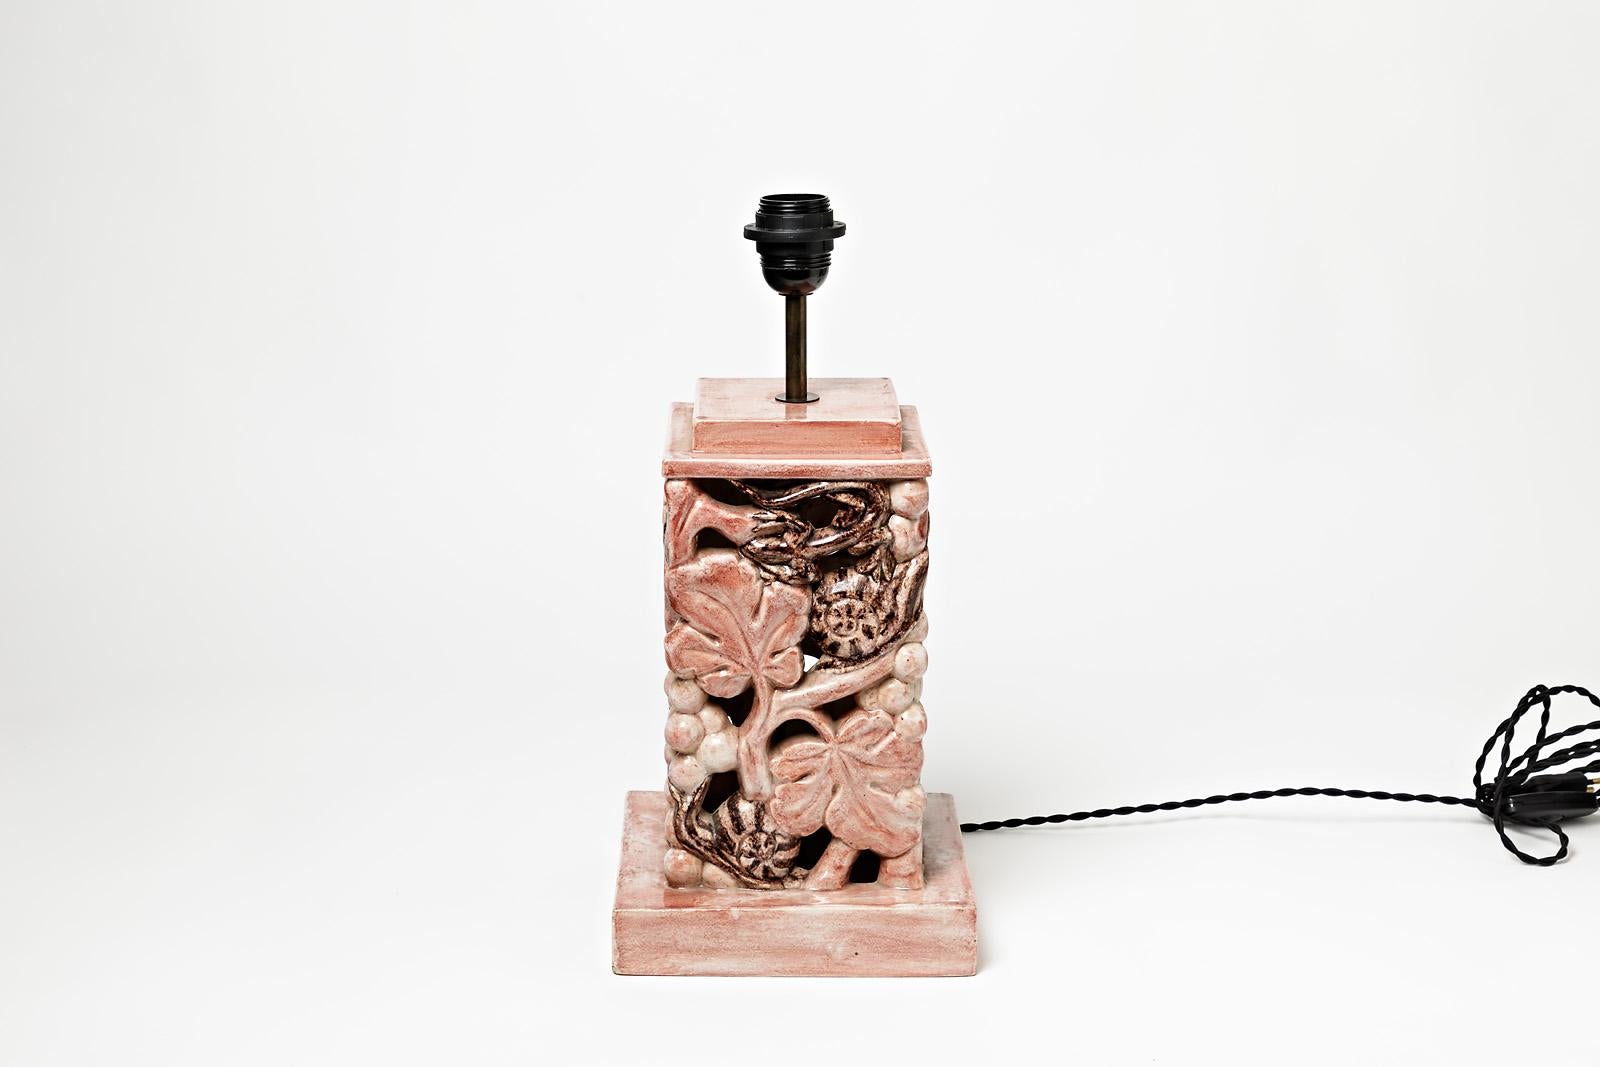 Eine Tischlampe aus Keramik mit rosa Glasur.
Perfekter Originalzustand.
Unter dem Sockel signiert,
ca. 1960-1970.
Verkauft mit einem neuen Lampenschirm und einem neuen europäischen elektrischen System.
Abmessungen:
Nur Keramik : 31 cm / 12'